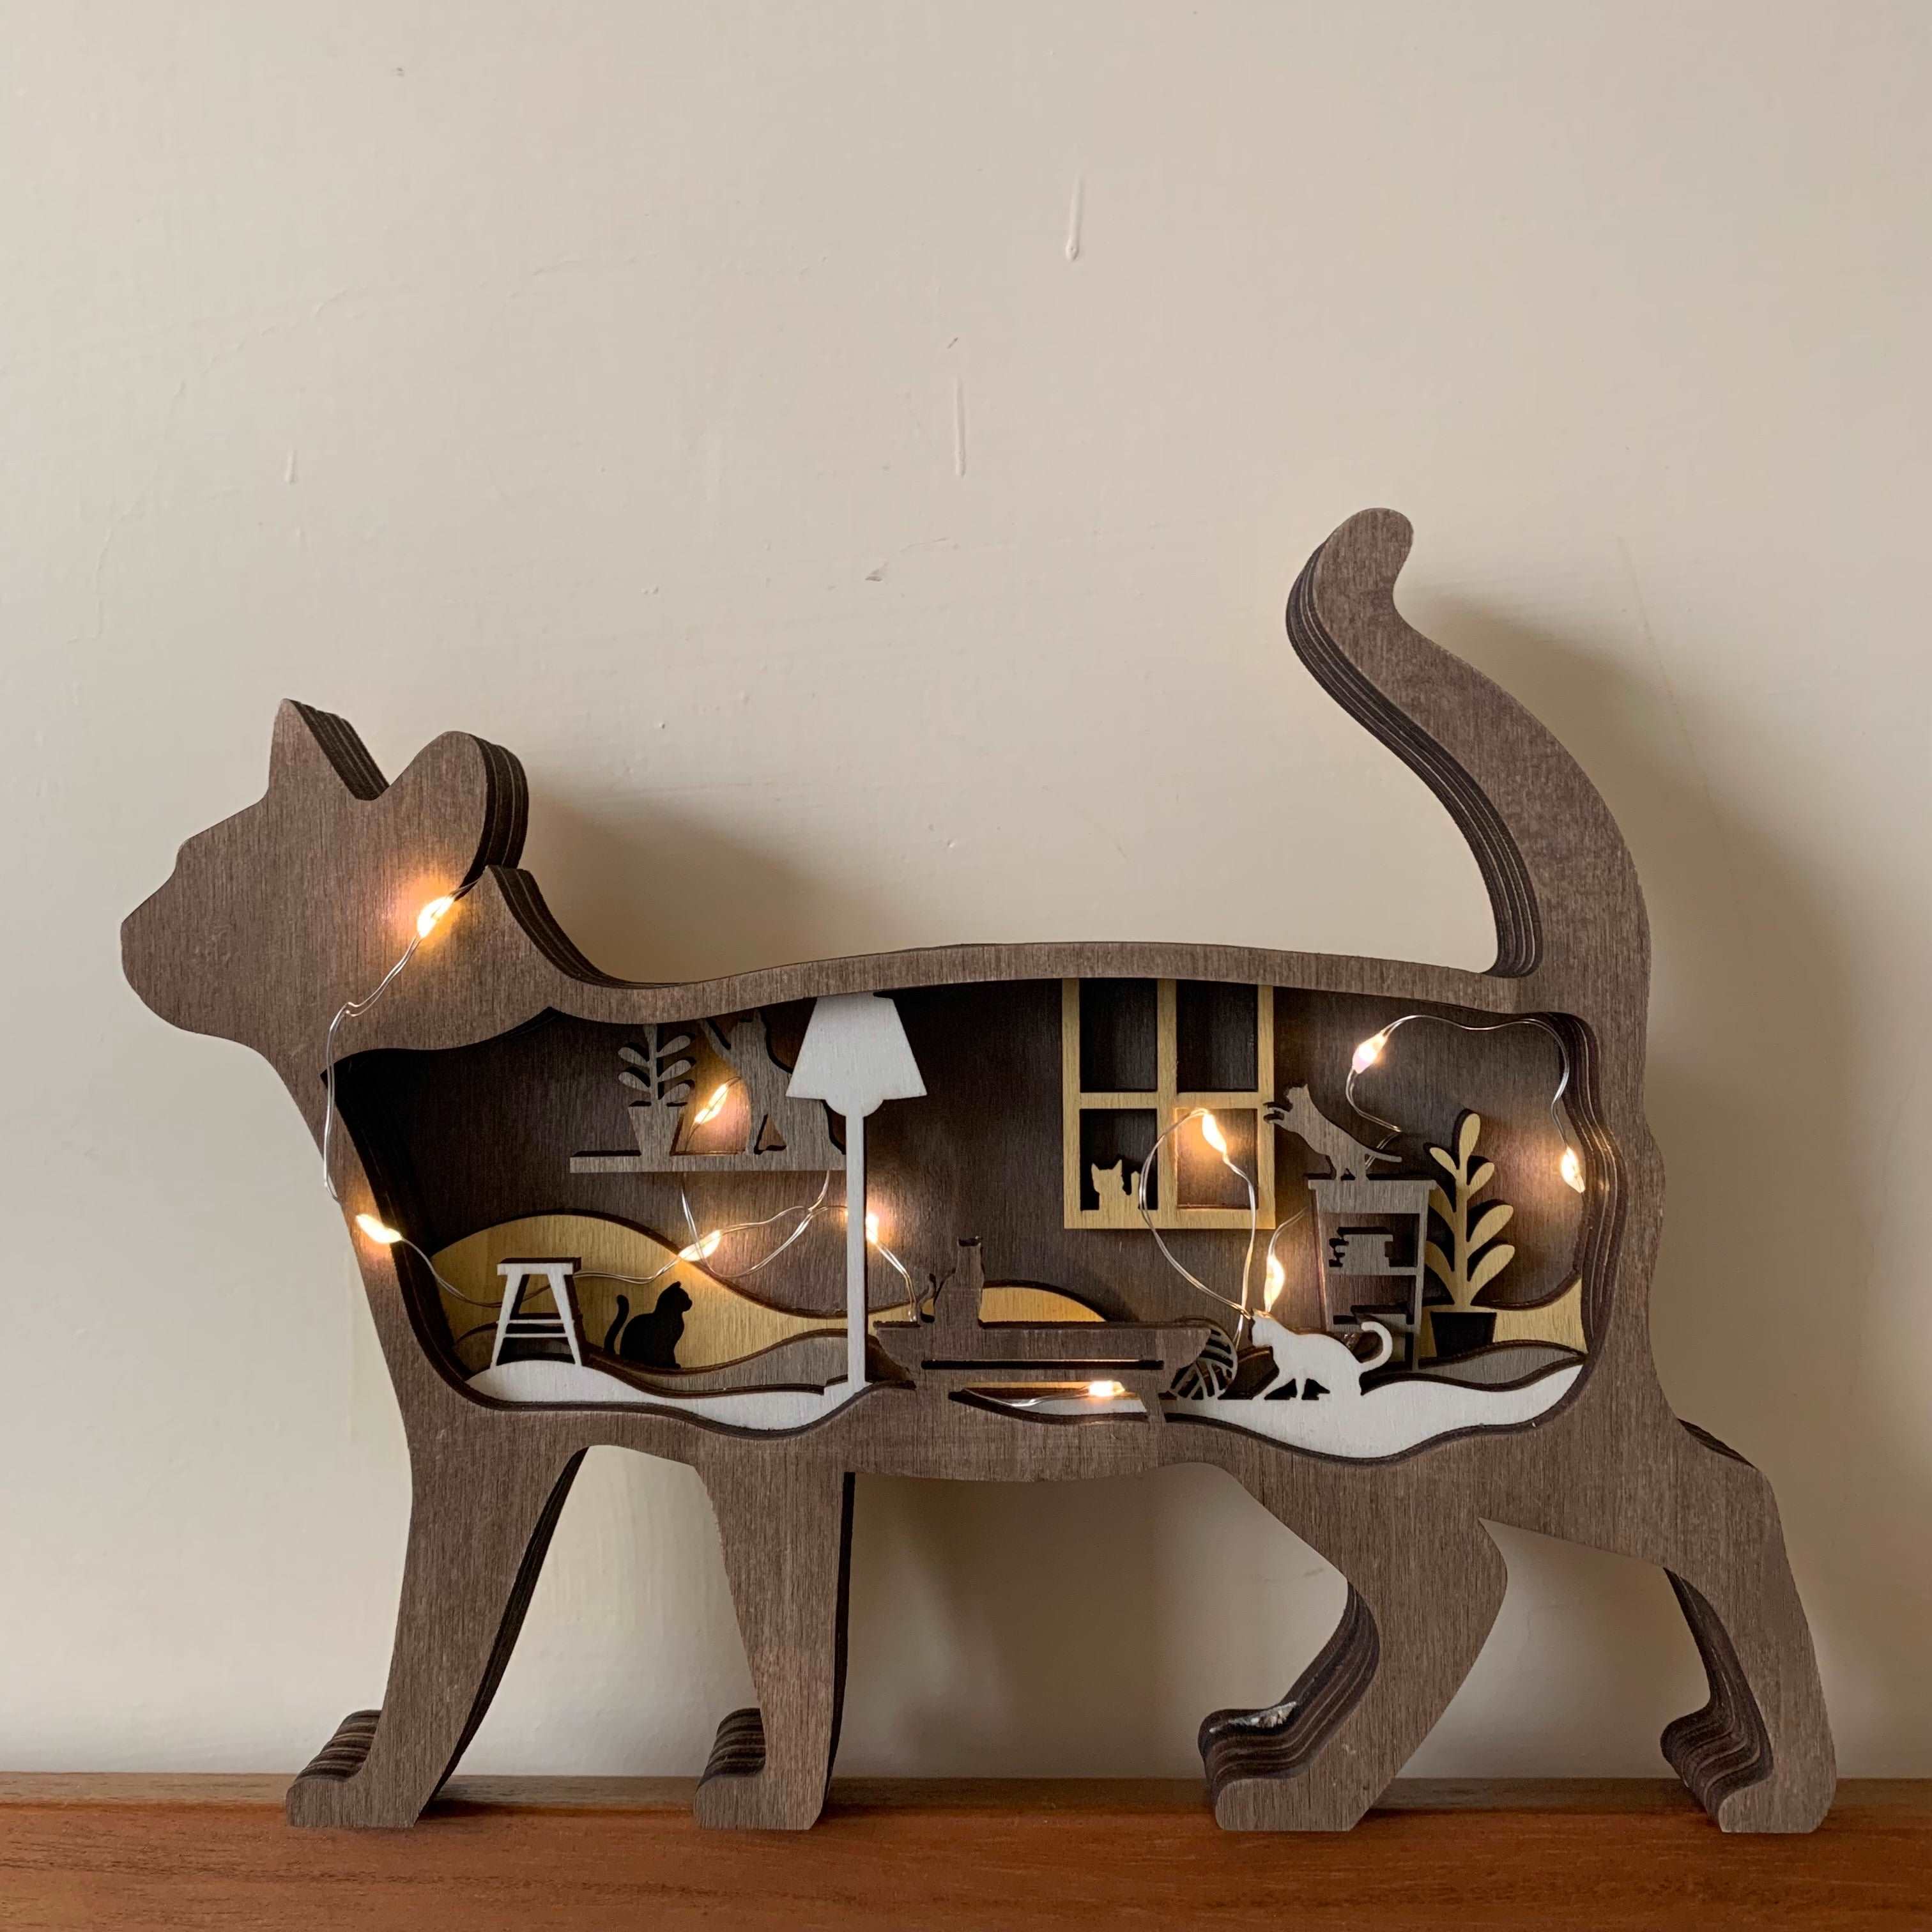 原木雕刻小貓燈座